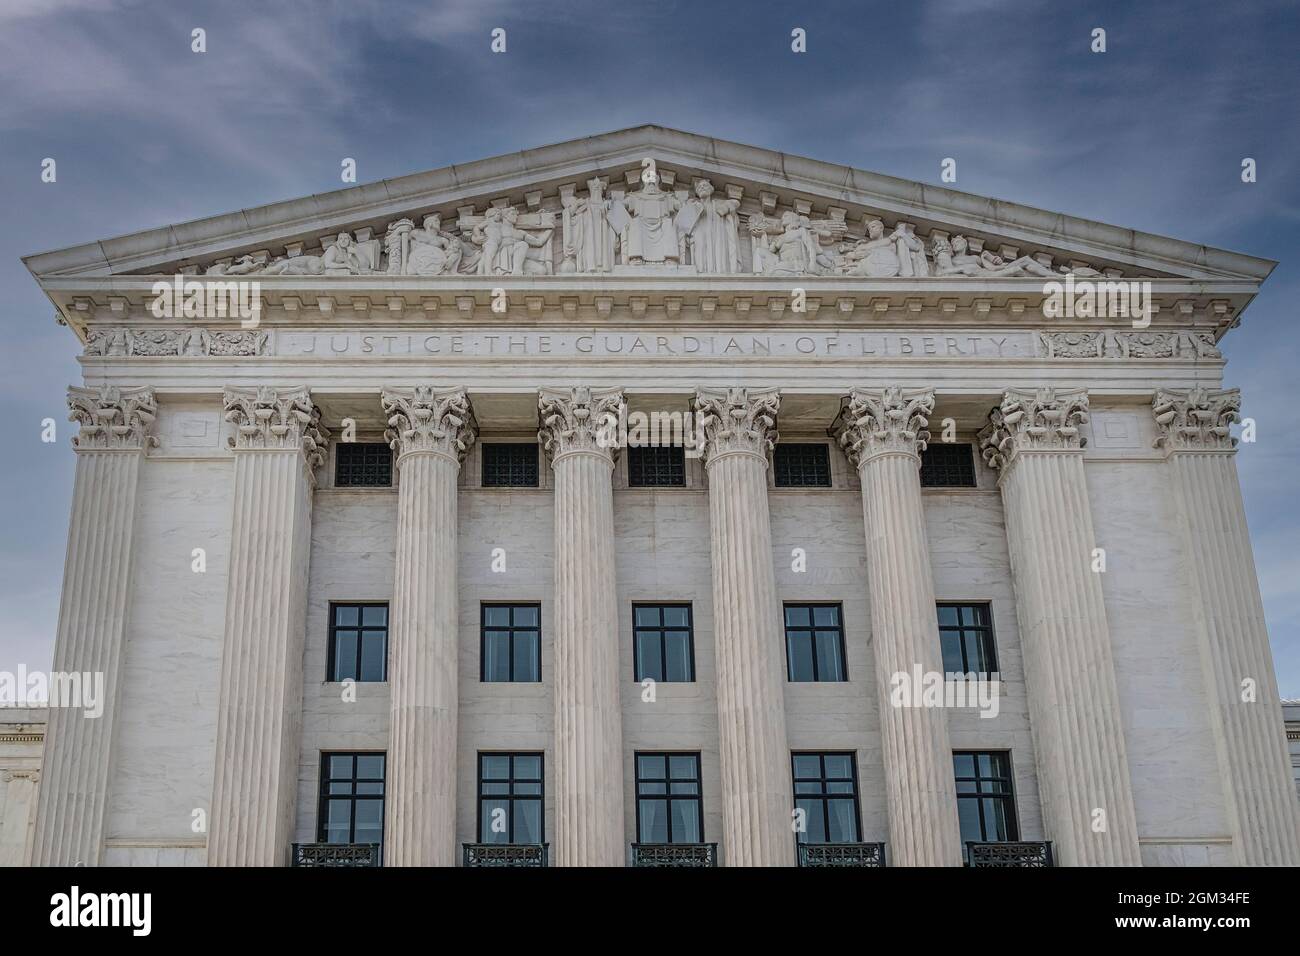 Giustizia il Guardiano della libertà SCOTO - frontone e colonne sul lato est della Corte Suprema degli Stati Uniti a Washington DC. Questa immagine Foto Stock